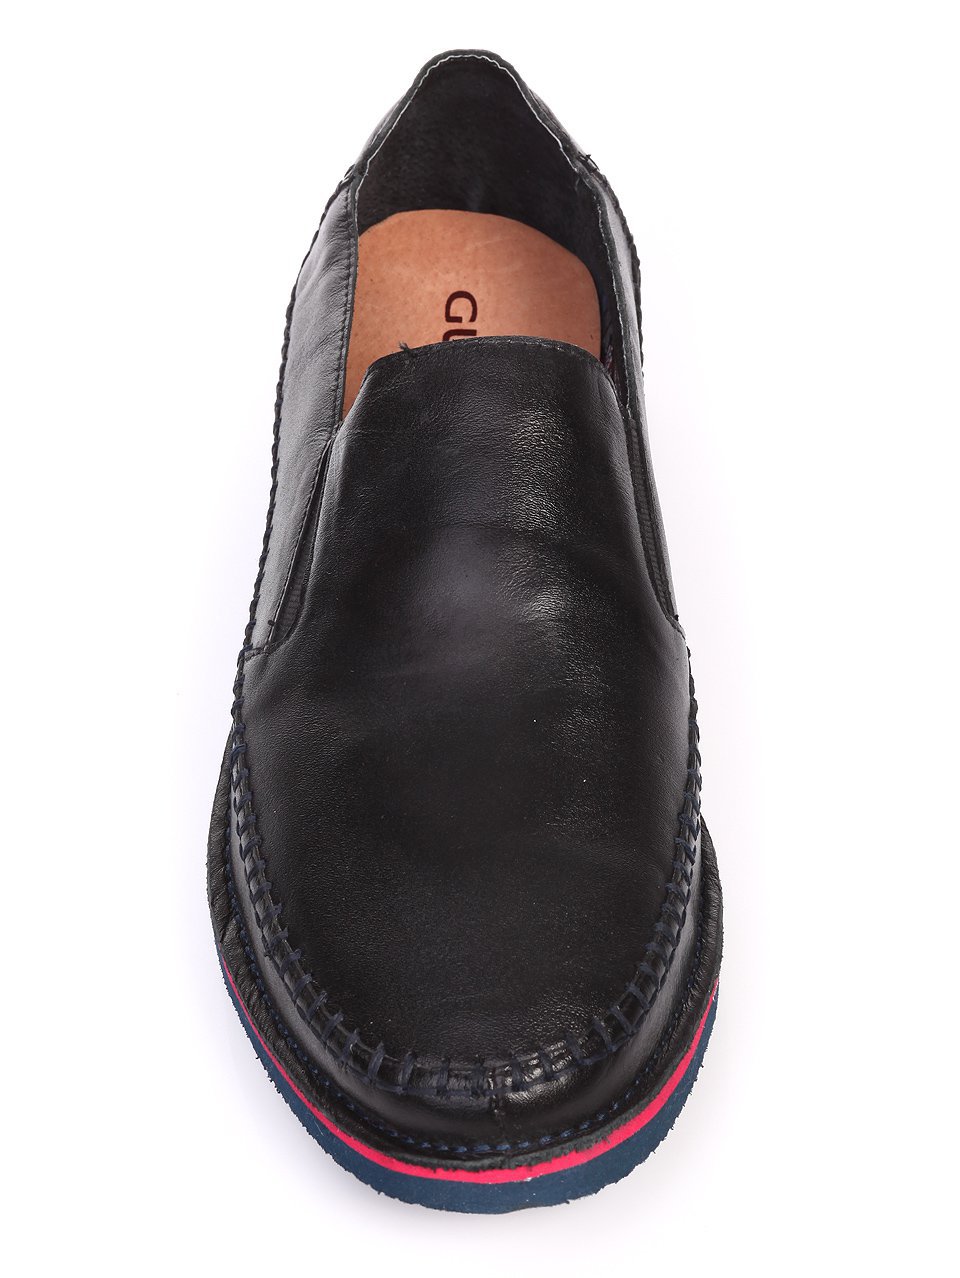 Ежедневни мъжки обувки от естествена кожа в черно 7N-17415 black